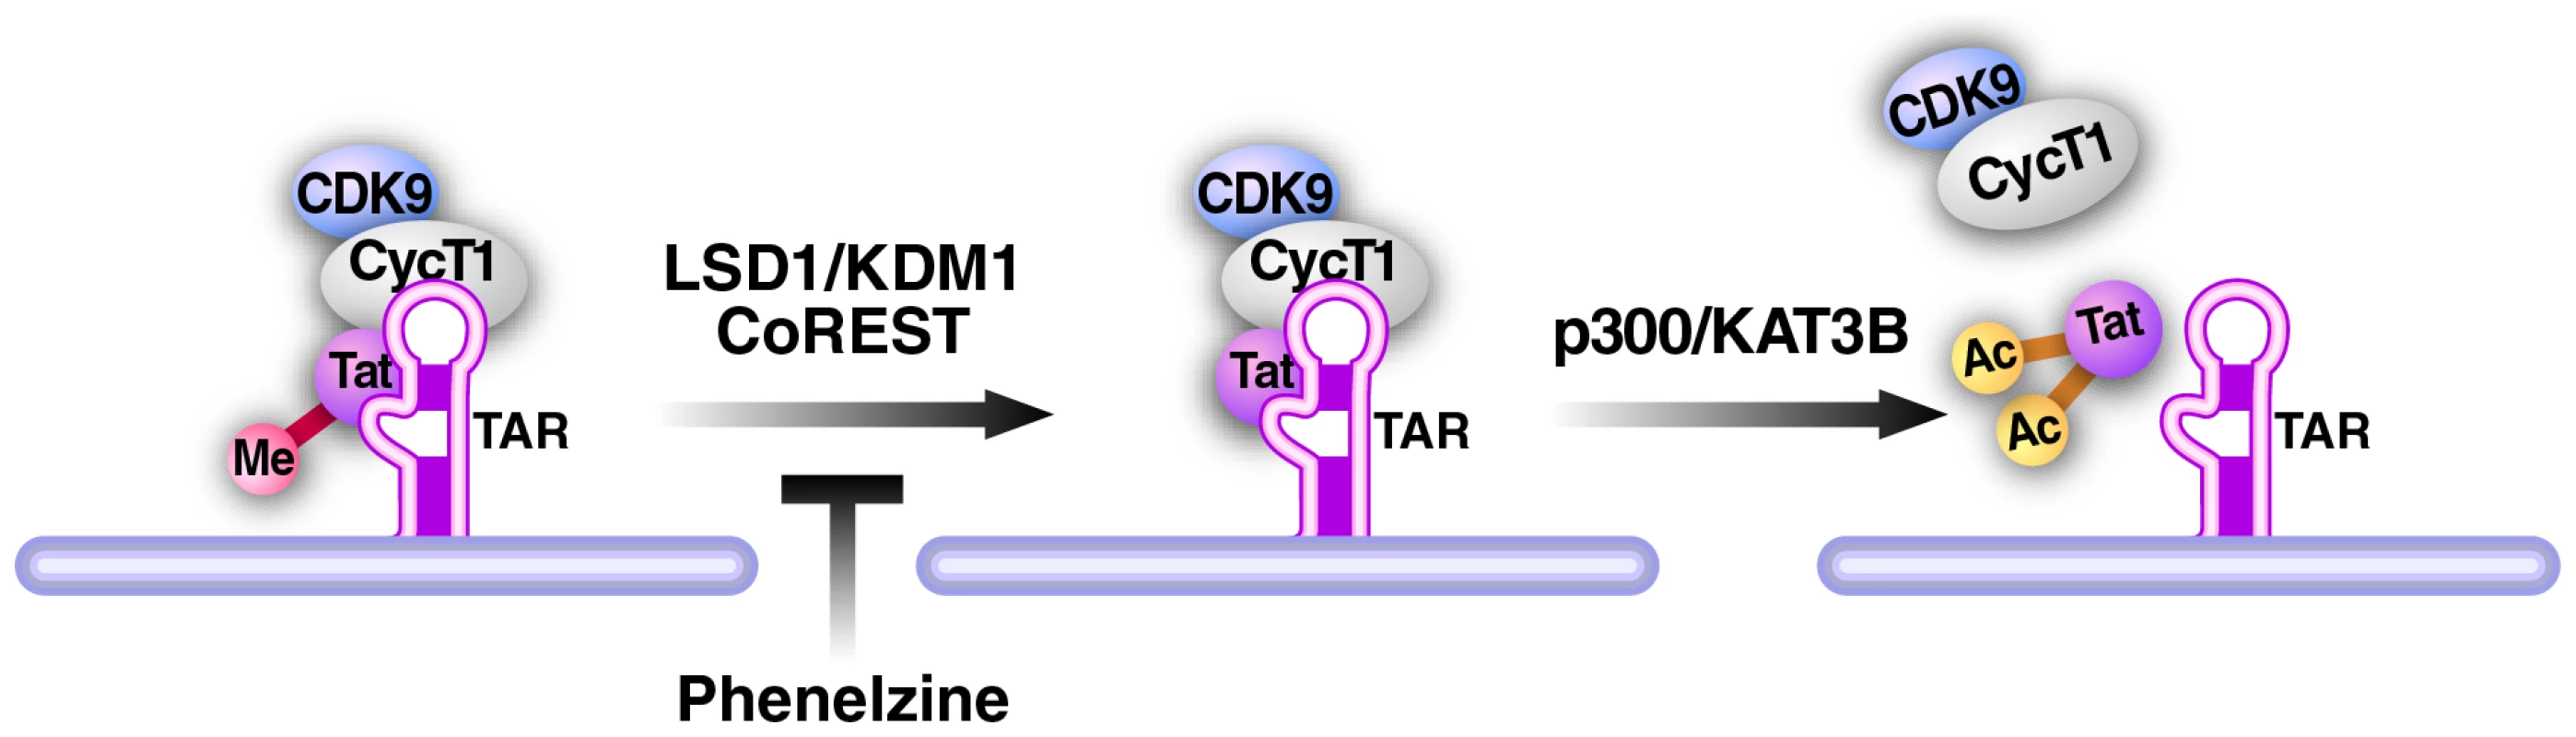 Model of LSD1/KDM1 action in HIV transcription.